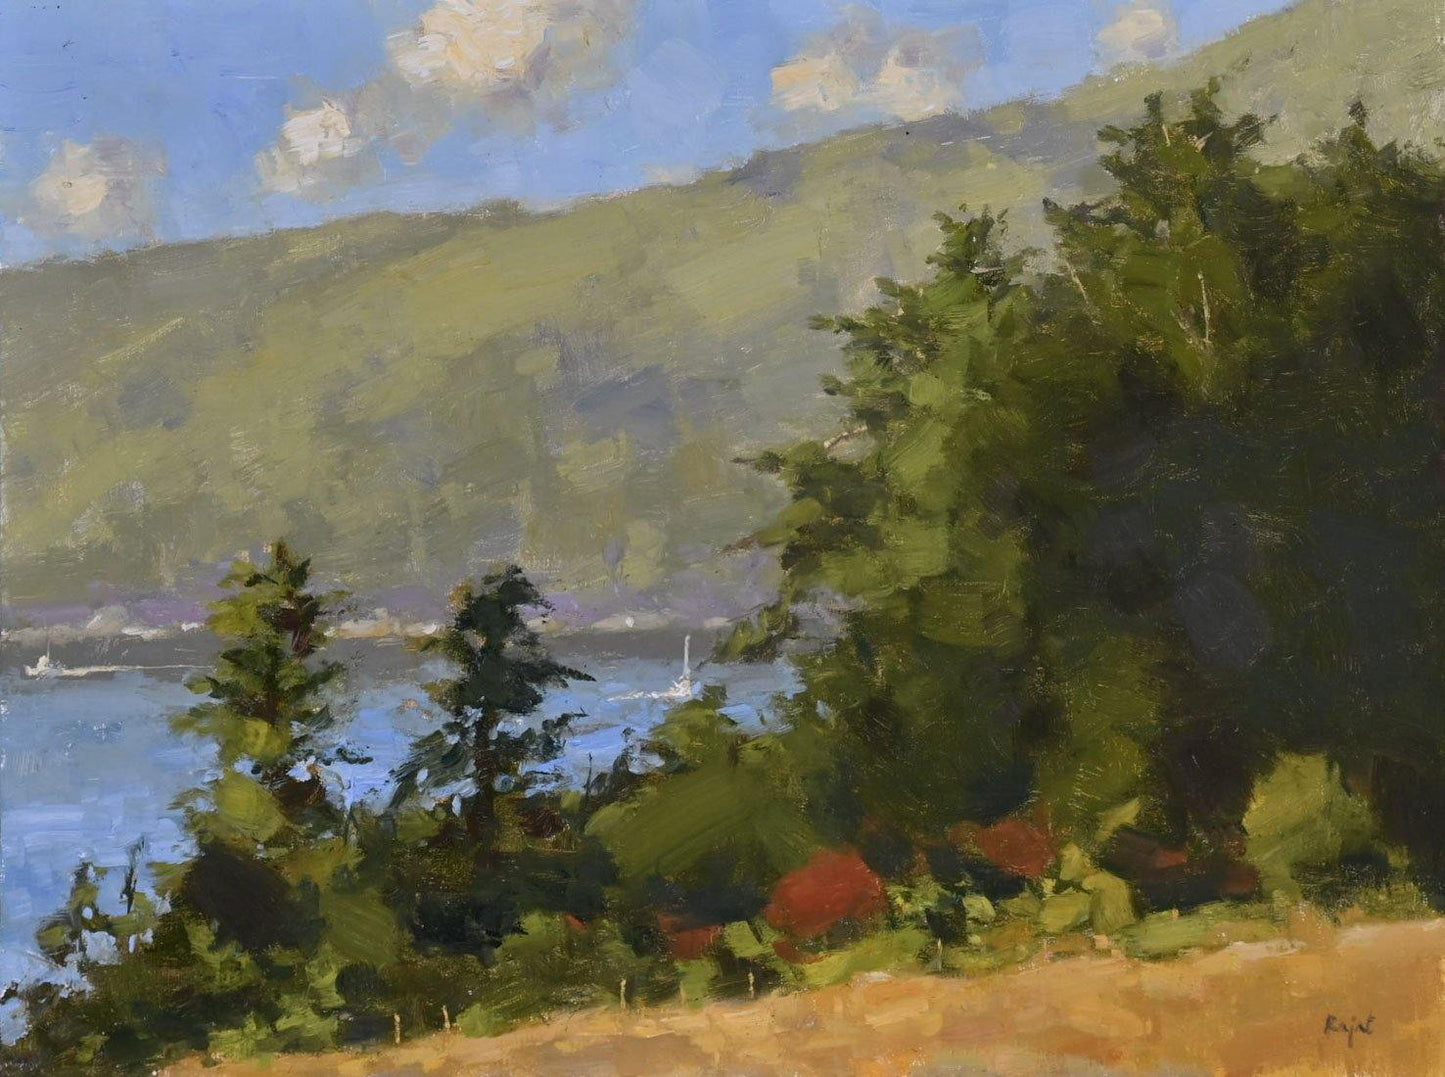 Oil Painting Classes - Landscape